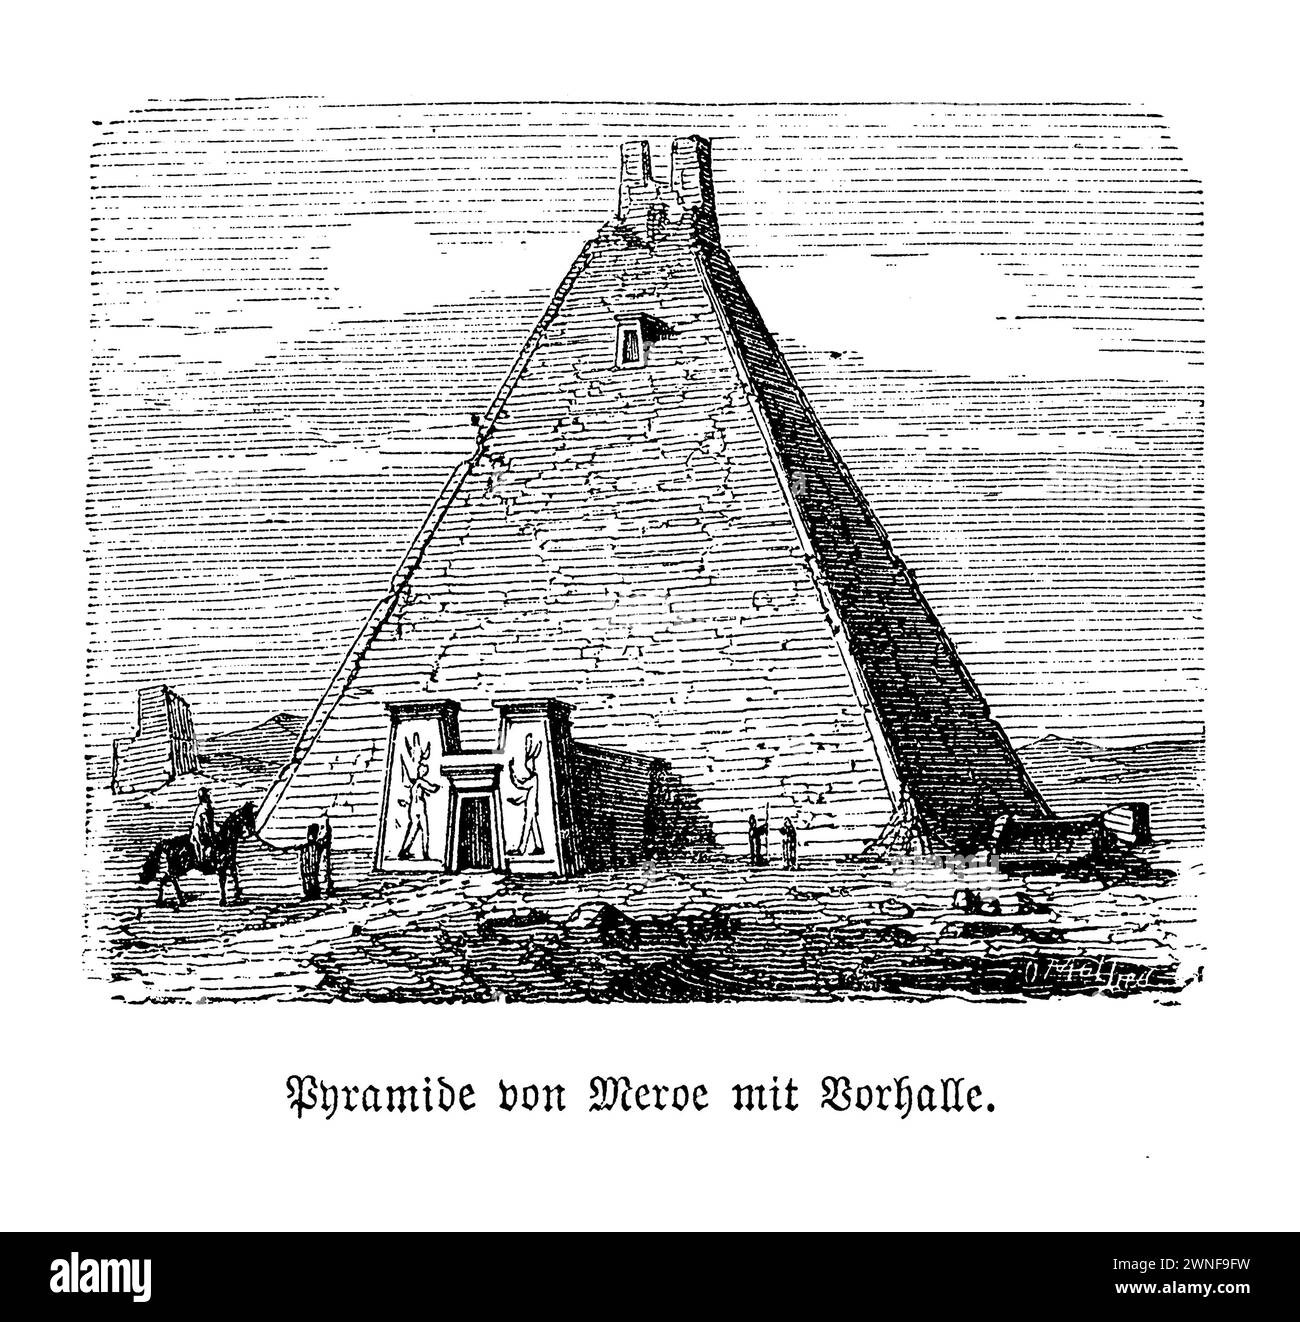 Piramidi di Meroë, grande piramide N6. Annidate nel cuore del deserto del Sudan, le piramidi di Meroë si ergono come sentinelle senza tempo dell'antico regno Kushita. Tra questi, la grande Piramide N6, un tempo mausoleo maestoso per la regina Amanishakheto, racconta una storia di grandezza e perdita. Eretta per onorare la potente regina che regnò in prosperità, questa piramide era una testimonianza dell'abilità architettonica e del ricco patrimonio culturale di Meroë. Tuttavia, la sua eredità fu rovinata negli anni '1830, quando il cacciatore di tesori Giuseppe Ferlini, guidato dall'avidità, inflisse danni irreparabili nella sua ricerca dell'oro. Foto Stock